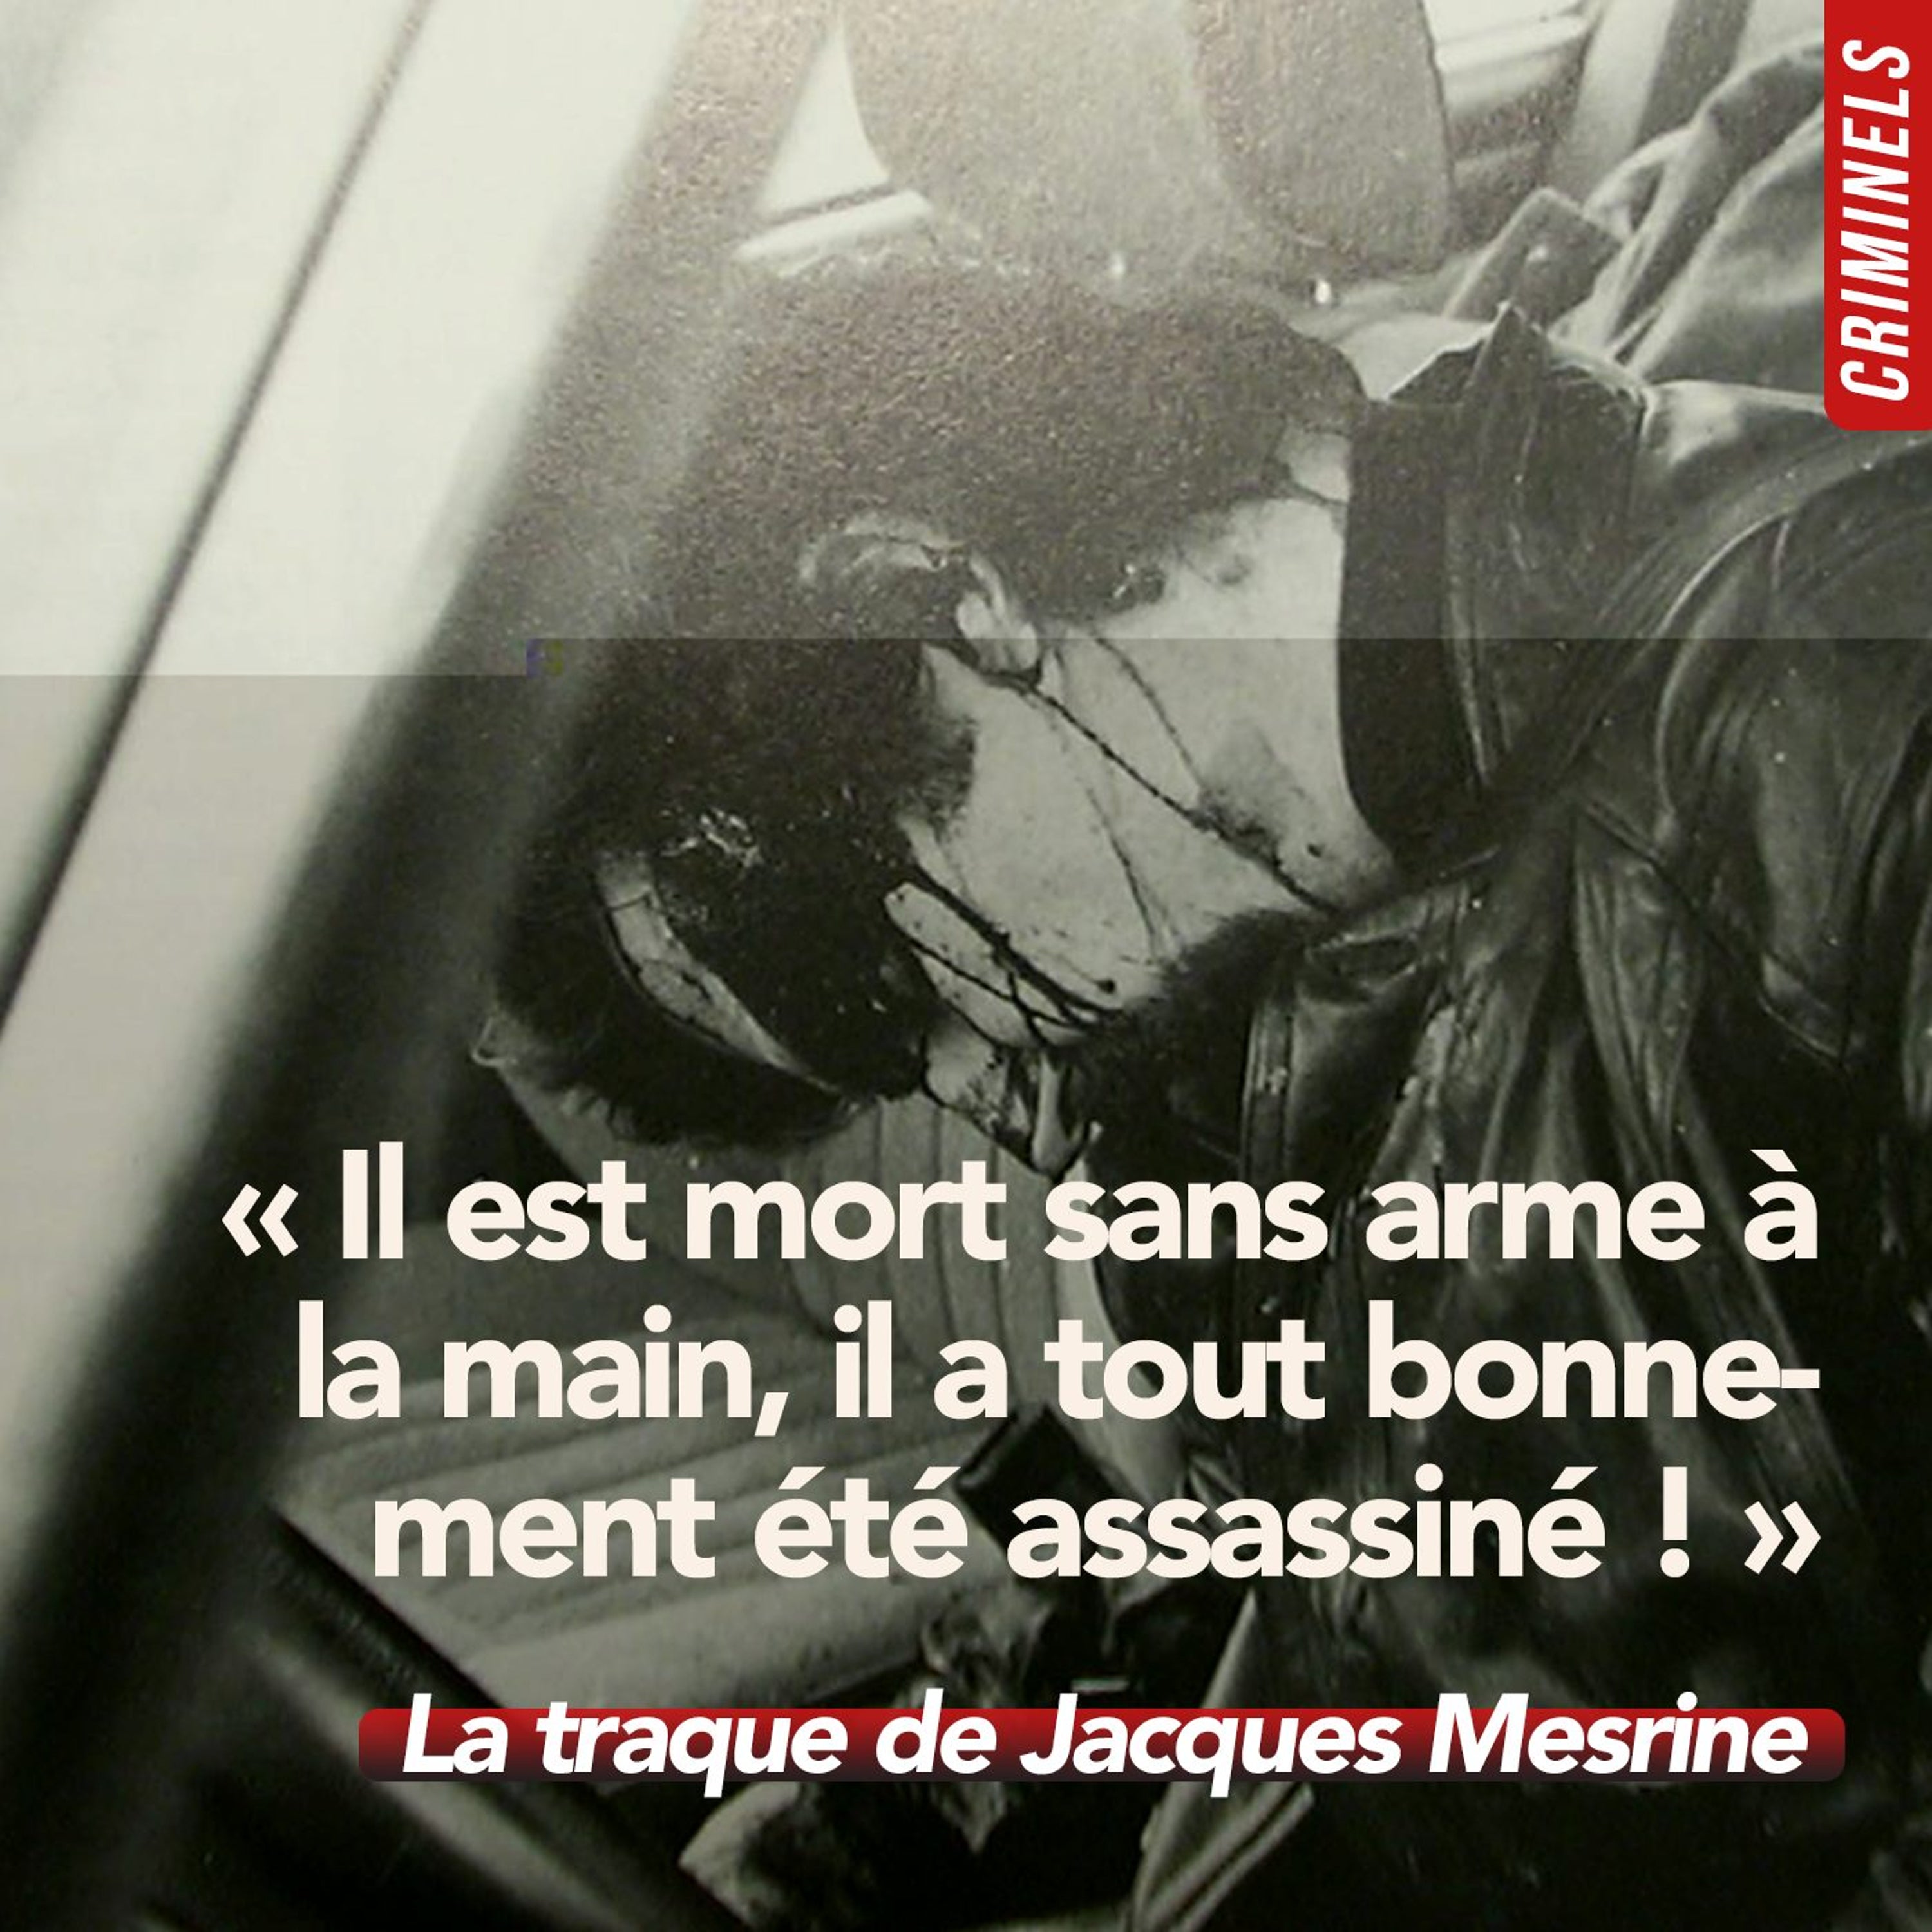 Hors-série - La traque de Jacques Mesrine (1/4)